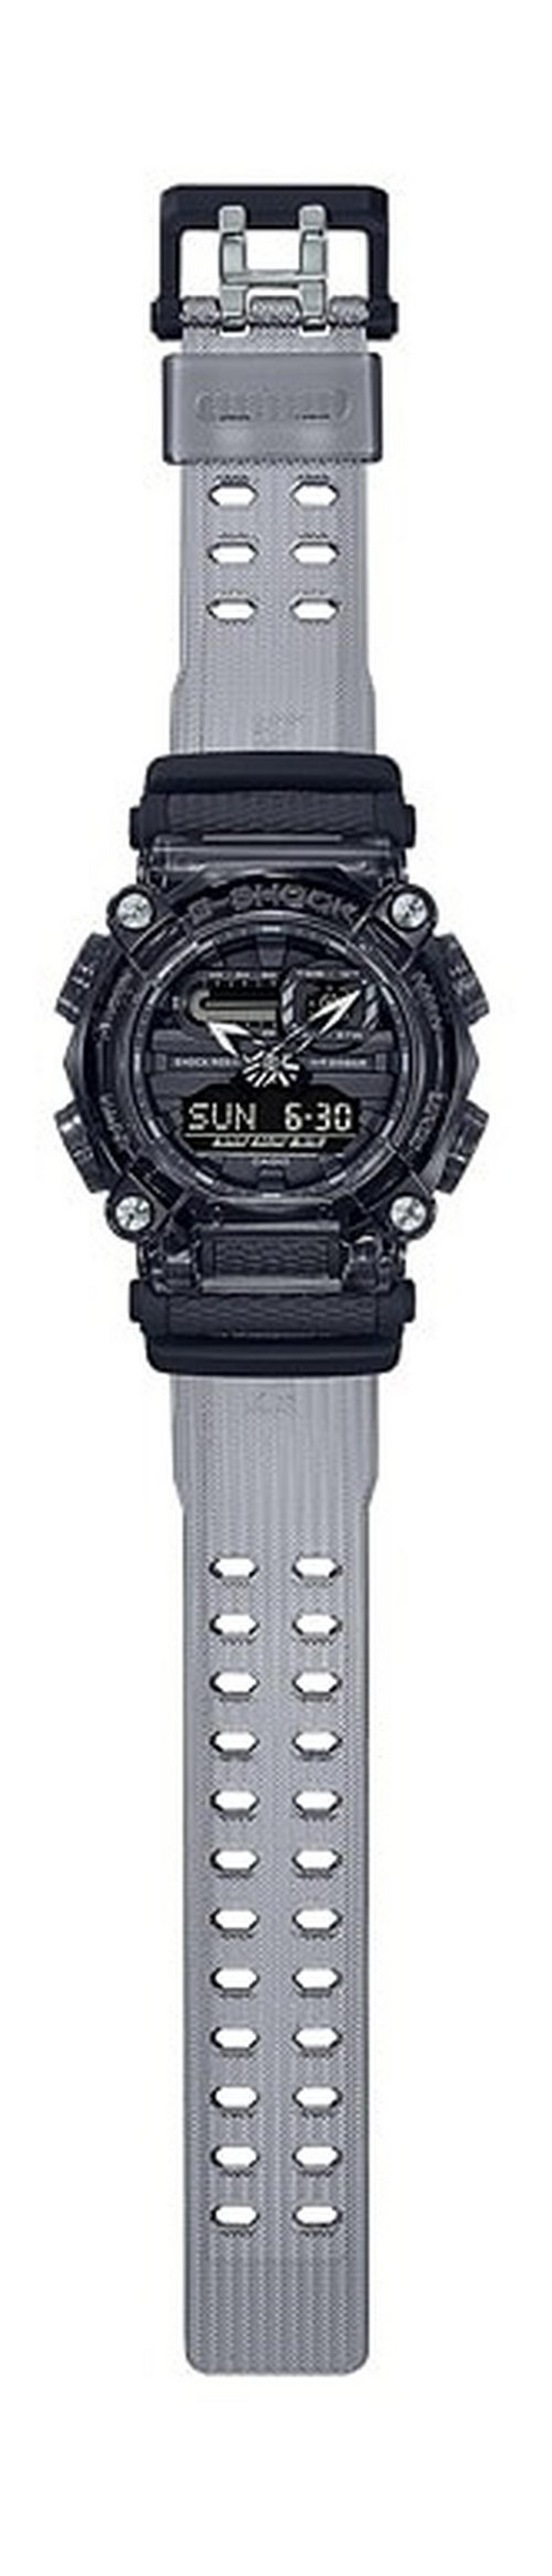 ساعة كاسيو جي شوك كاجوال-للرجال حجم 53 ملم (GA-900SKE-8ADR)